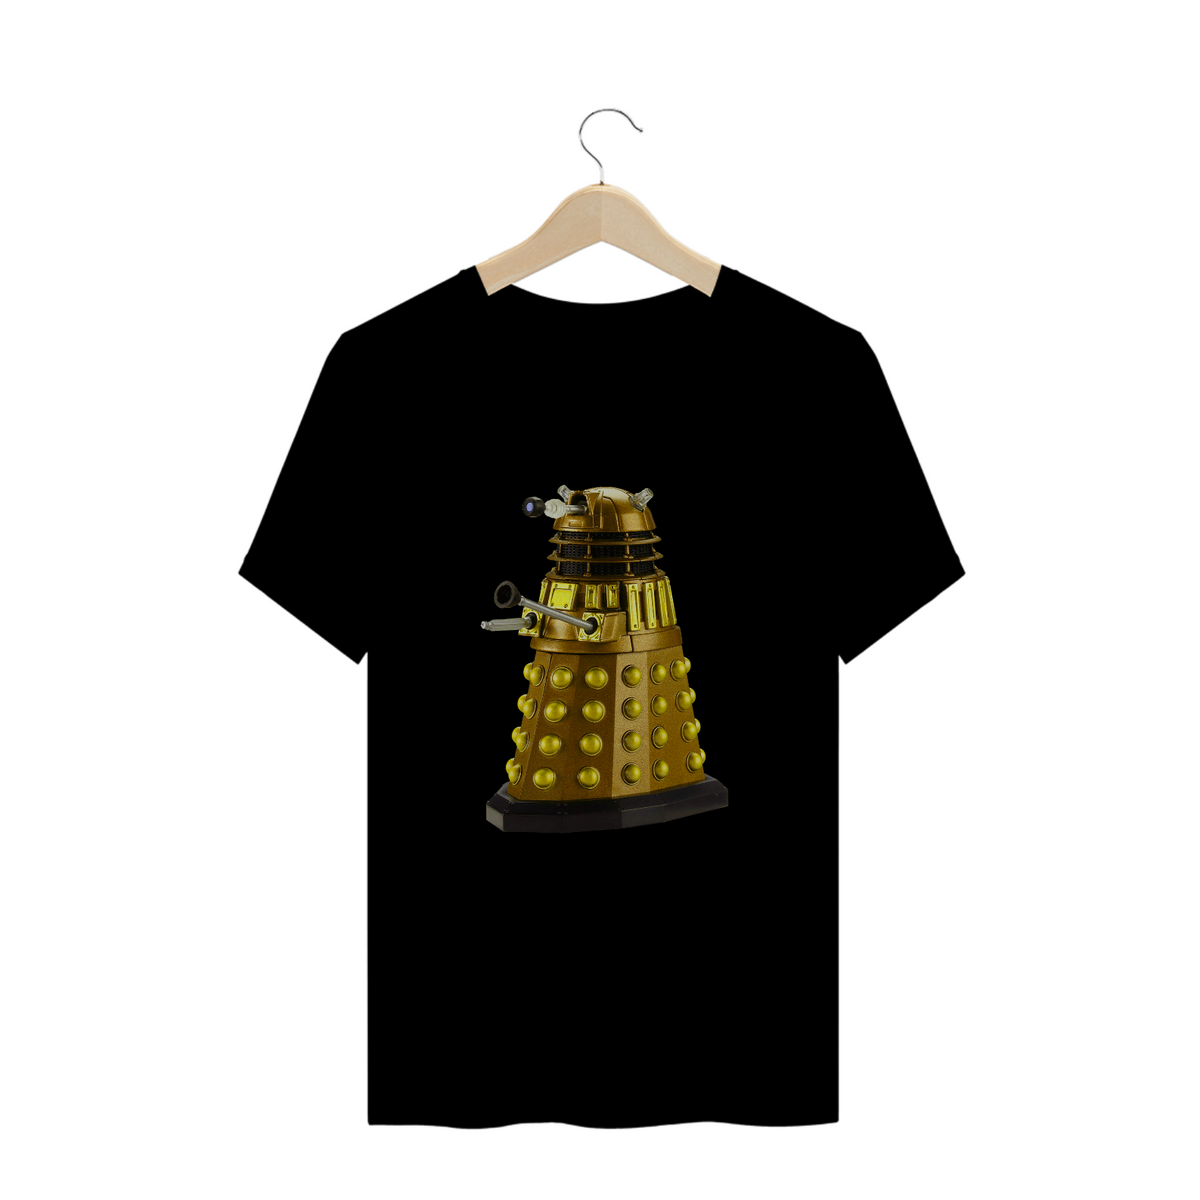 Nome do produto: Camisa Dalek (Doctor Who)